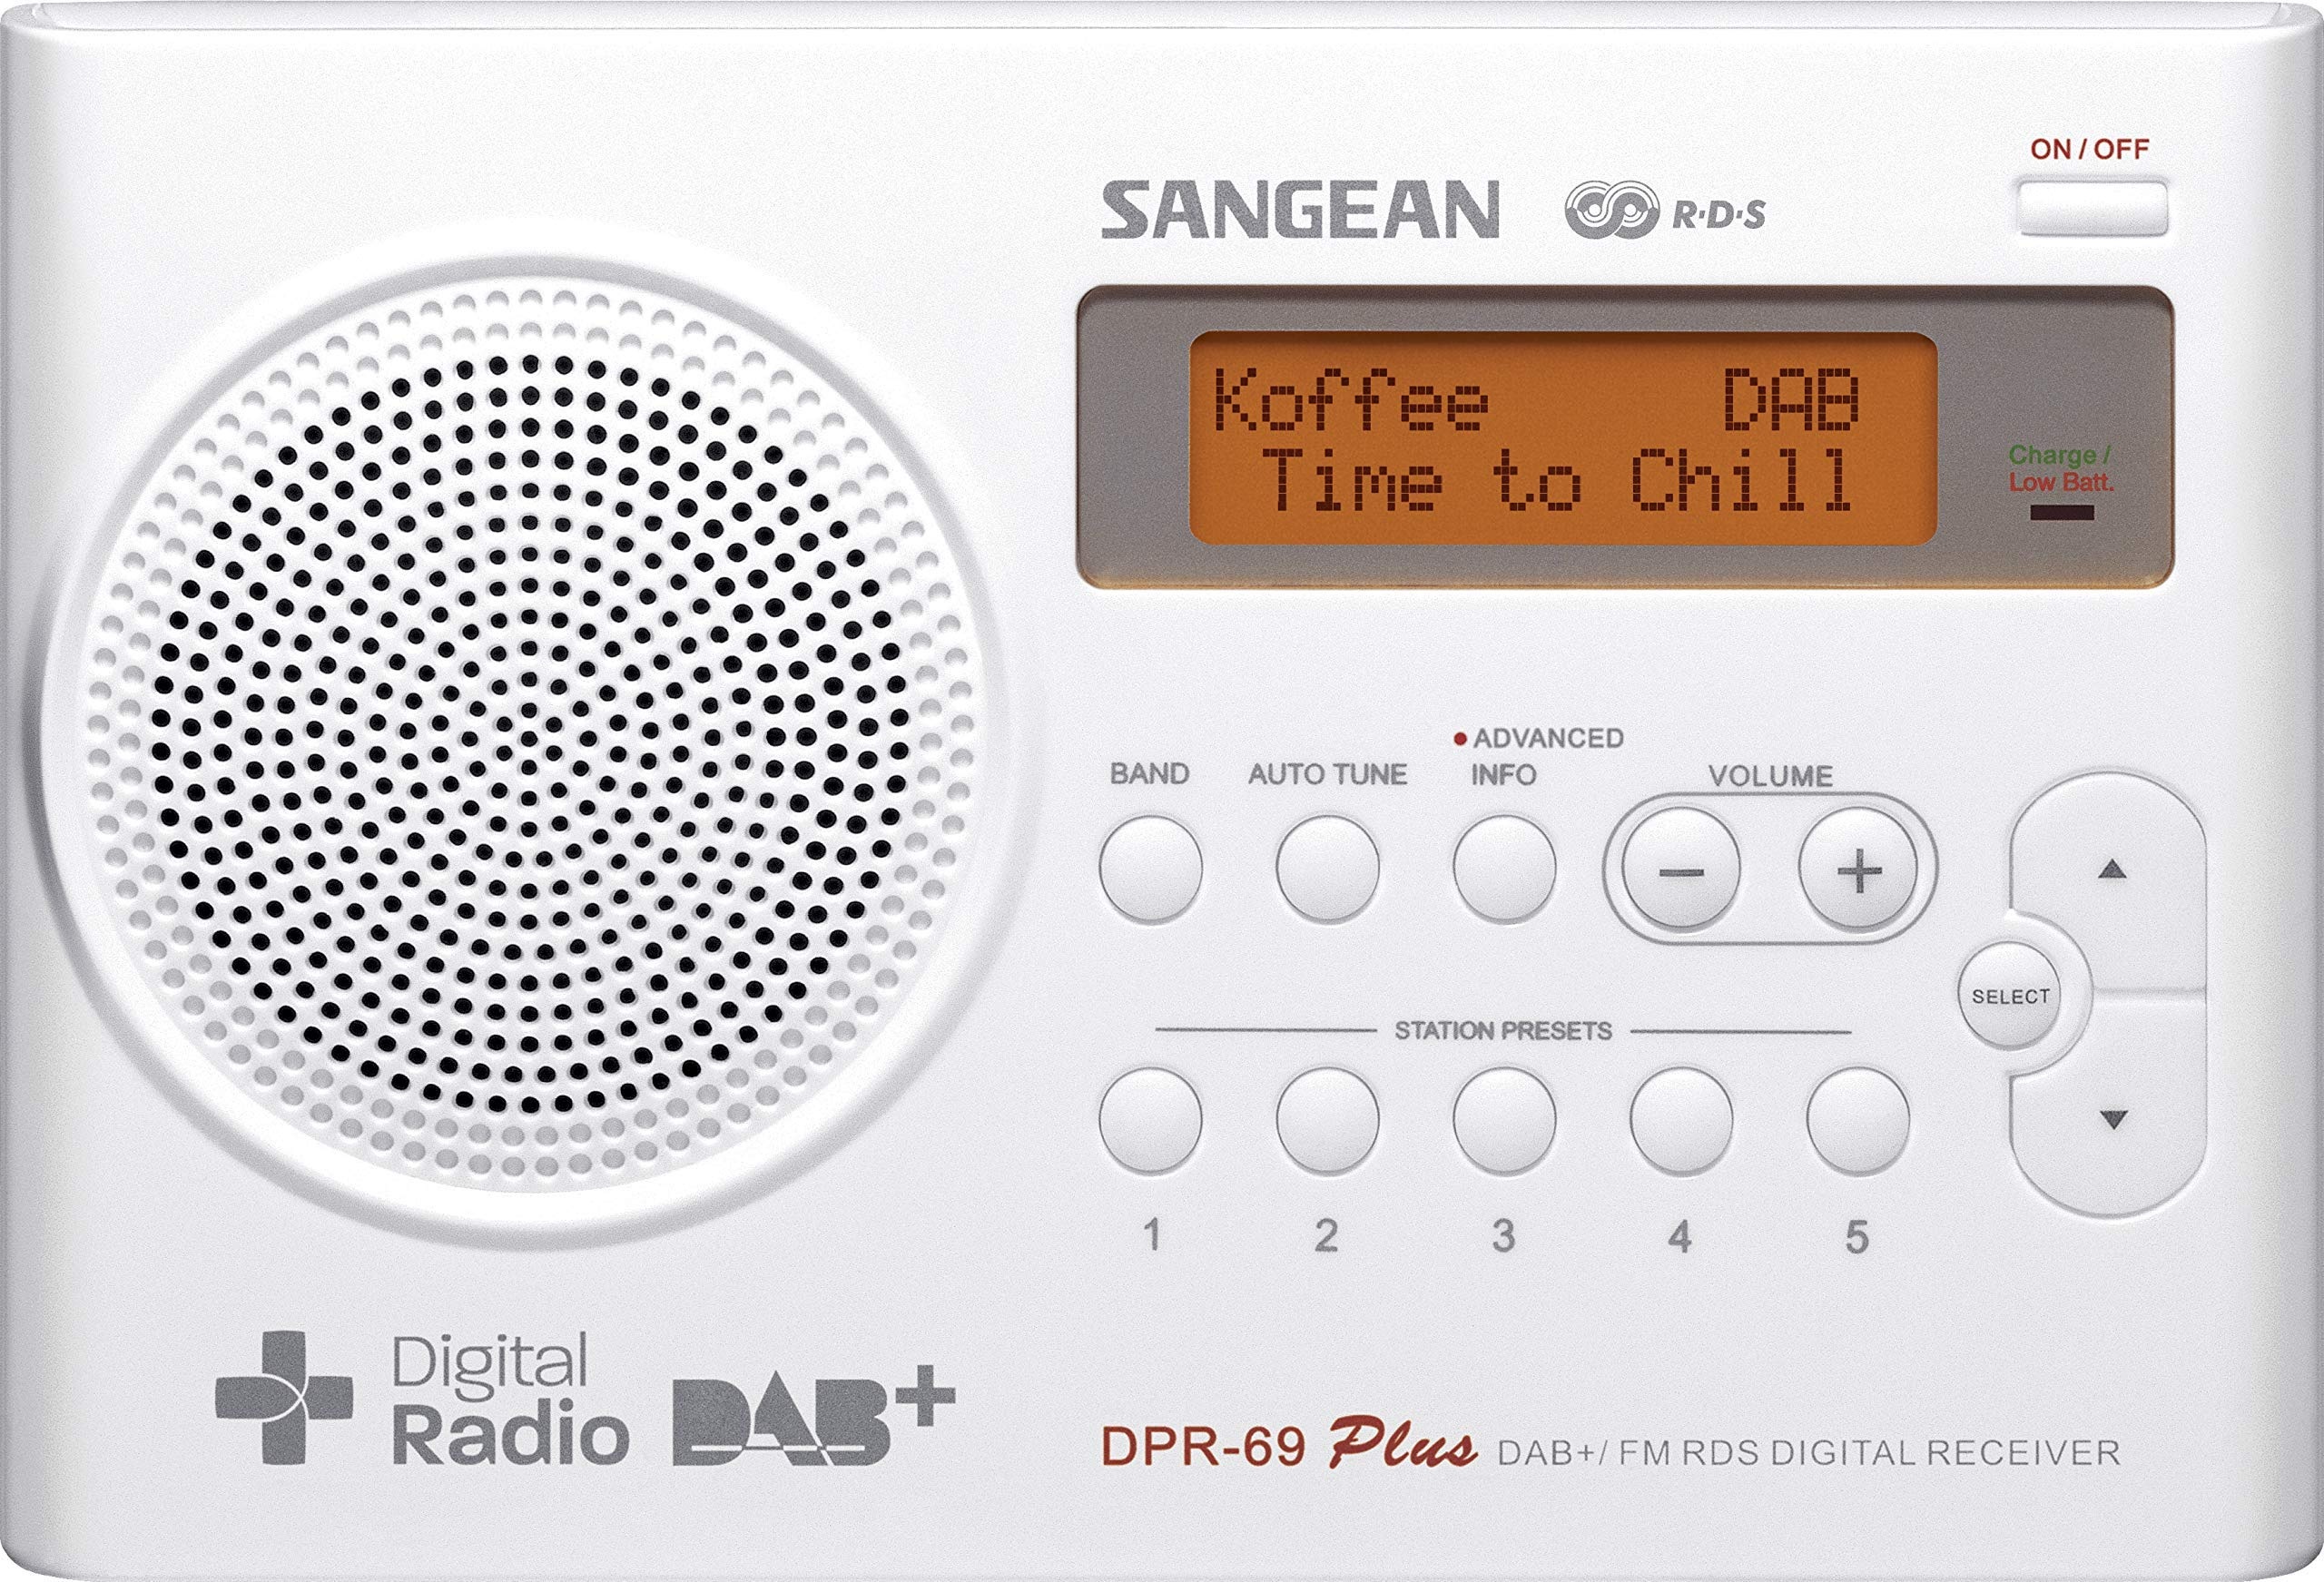 Sangean DPR-69+ tragbares DAB+ Digitalradio (UKW-Tuner, Batterie-/Netzbetrieb) weiß